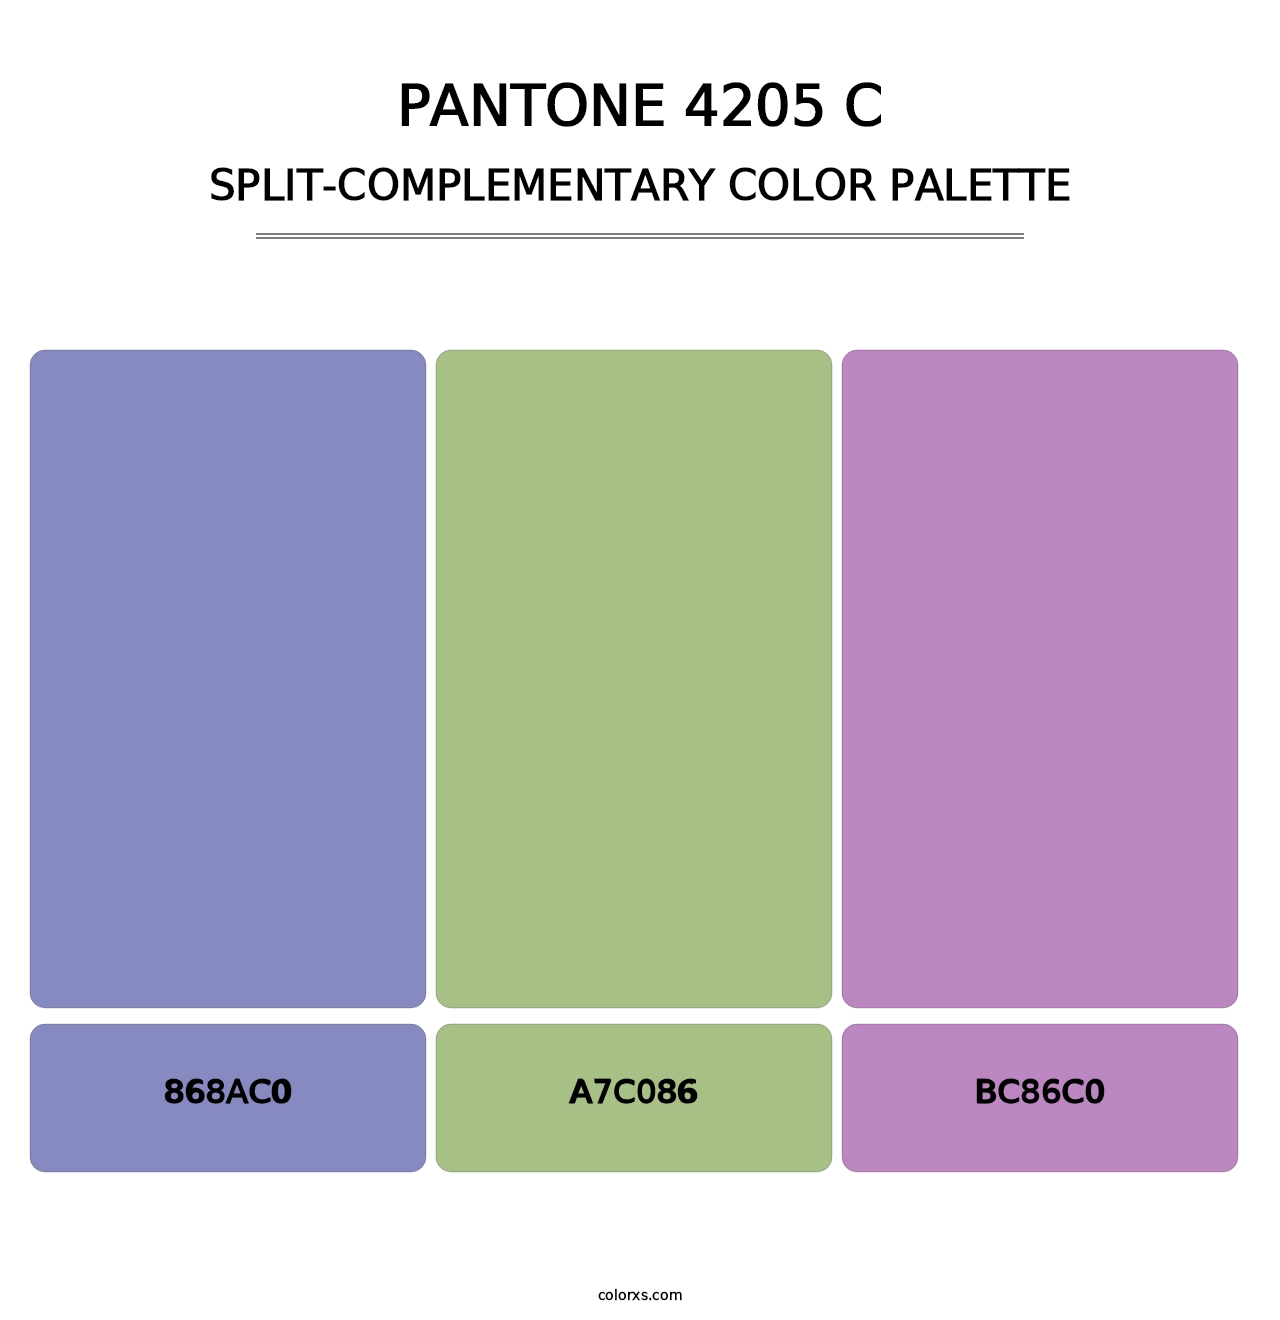 PANTONE 4205 C - Split-Complementary Color Palette